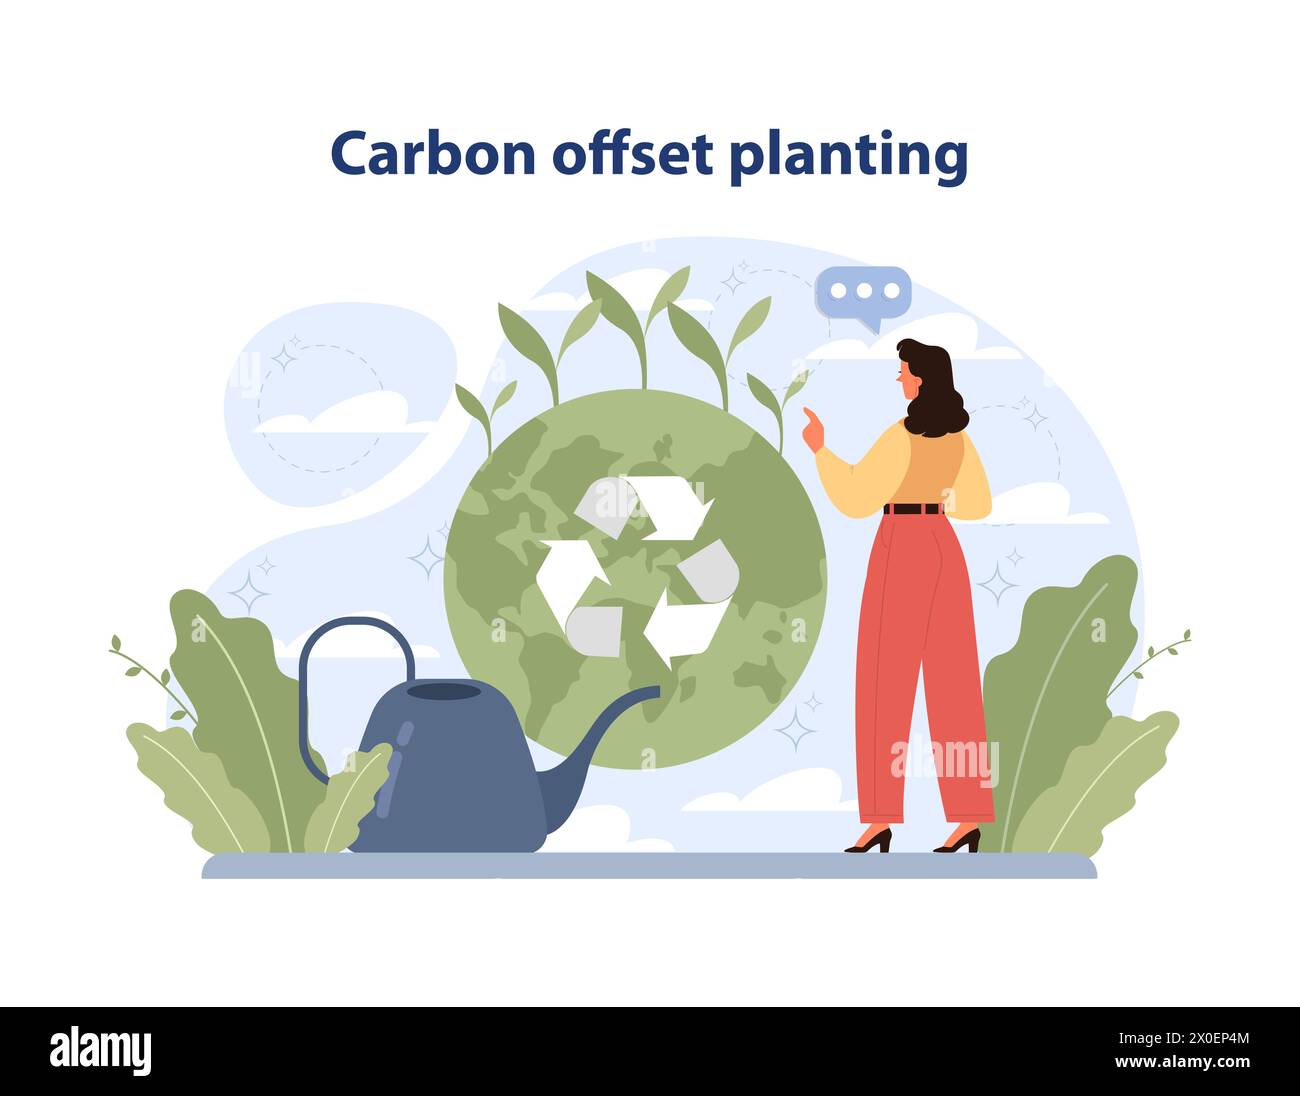 Concetto di piantagione Carbon Offset. La donna nutre la Terra con il simbolo del riciclaggio, circondato da piante. Ruolo attivo nella riduzione dell'impronta di carbonio. Illustrazione vettoriale piatta Illustrazione Vettoriale